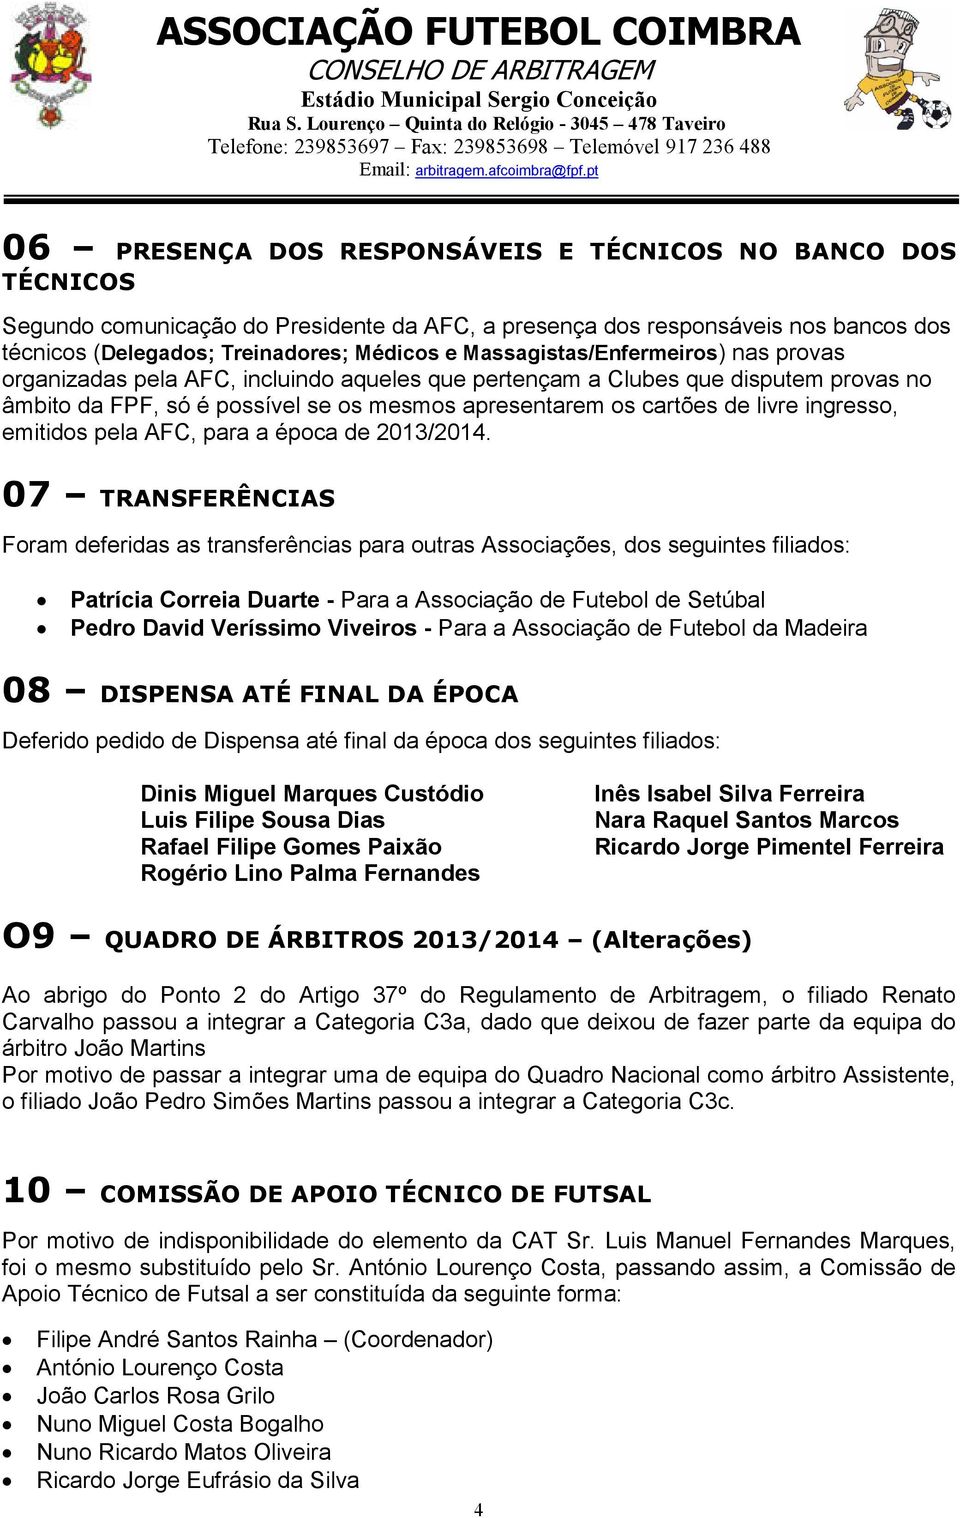 ingresso, emitidos pela AFC, para a época de 2013/2014.